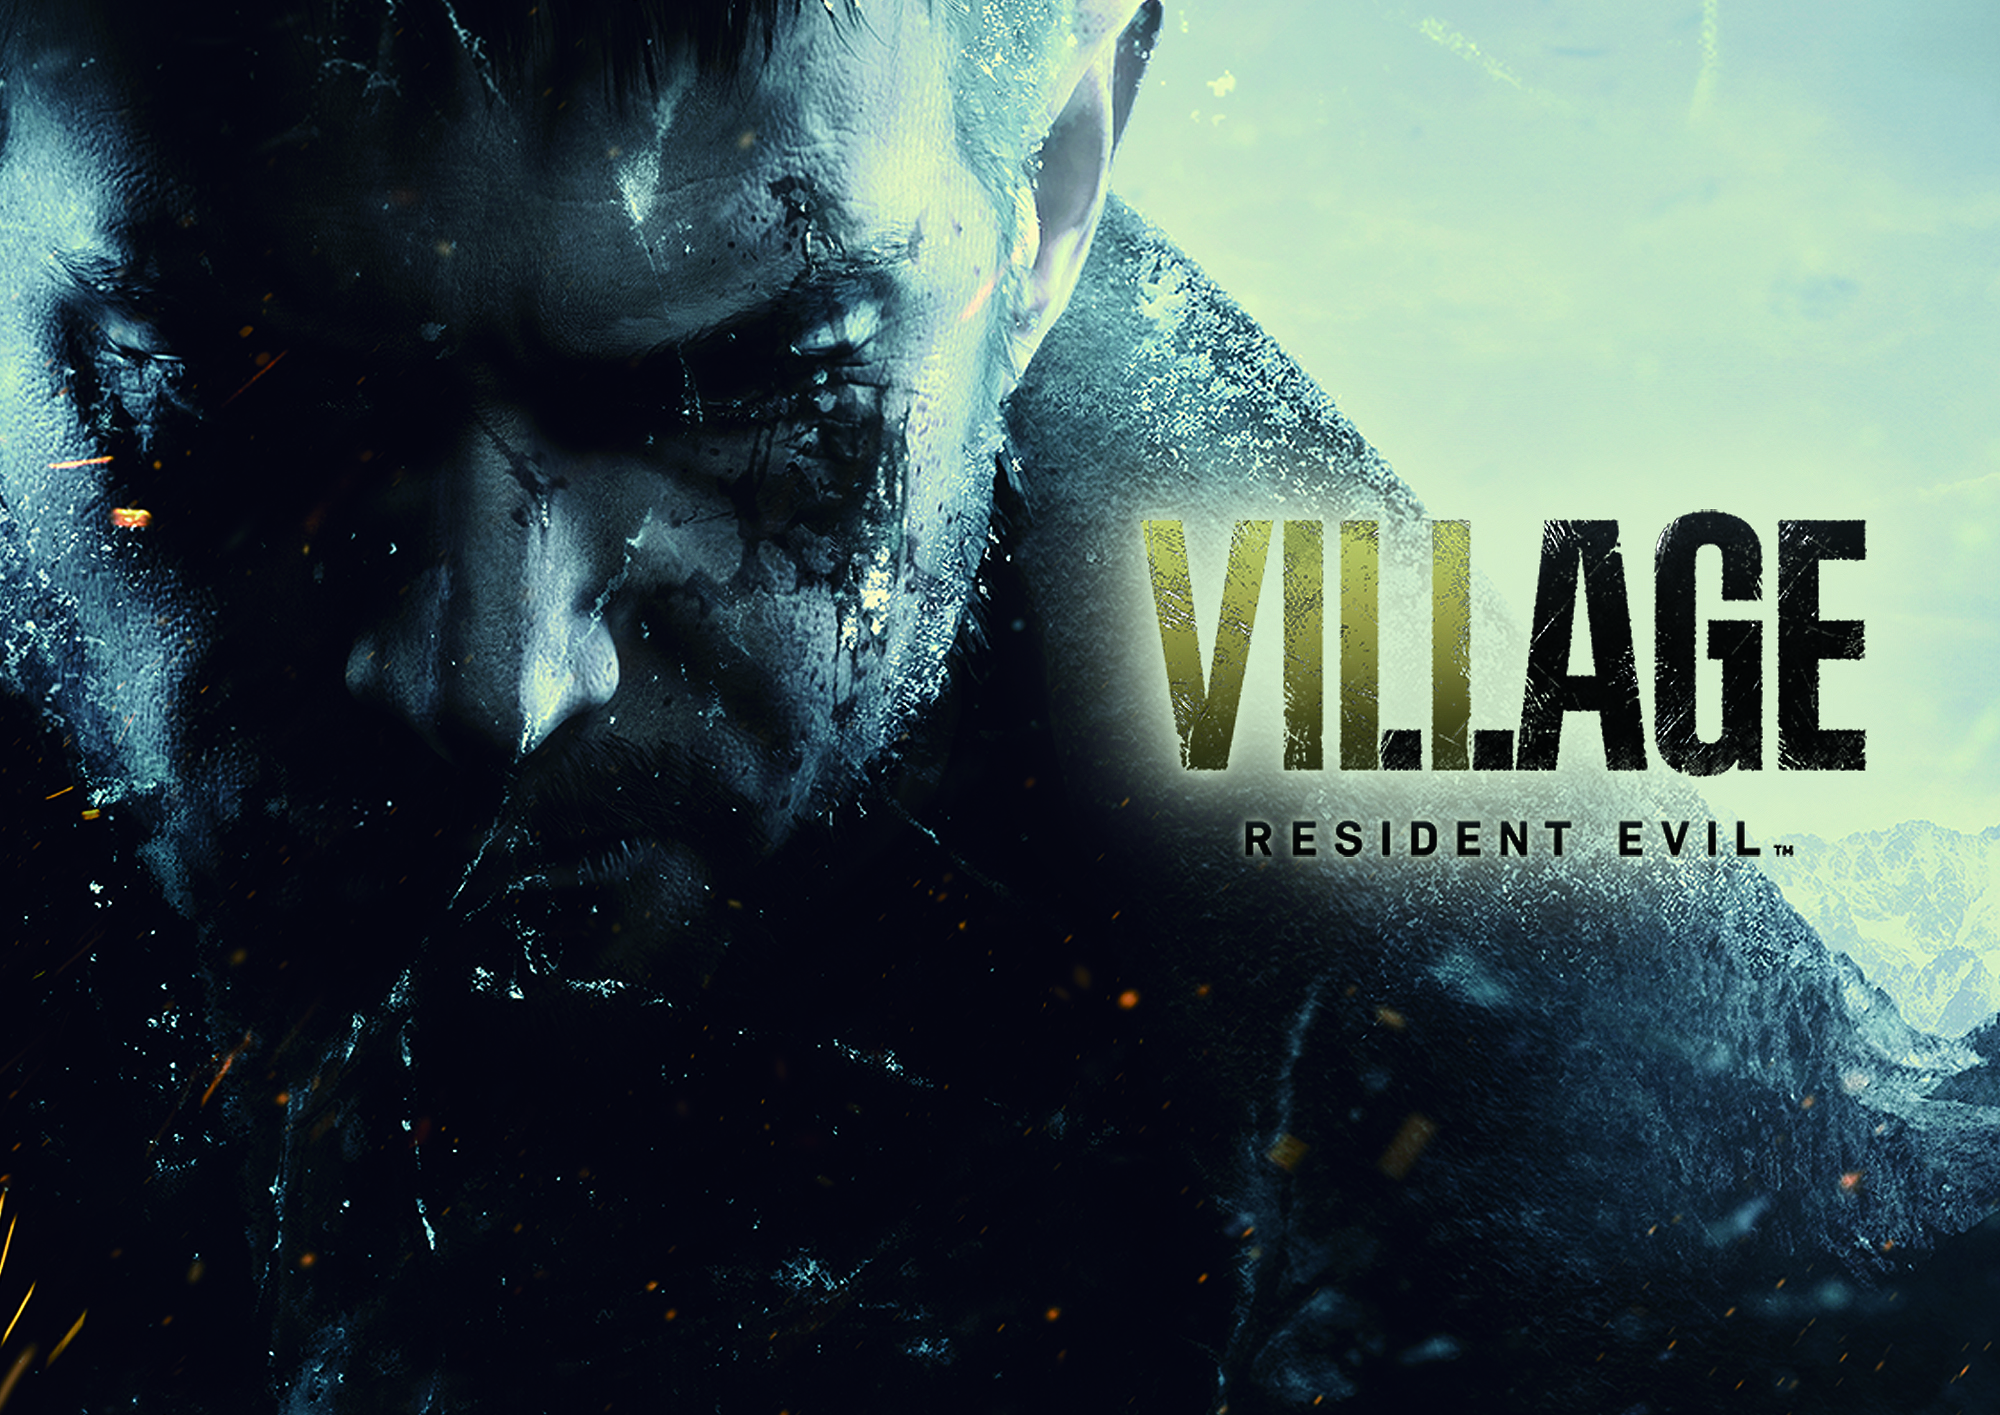 resident evil village, video game, chris redfield, resident evil